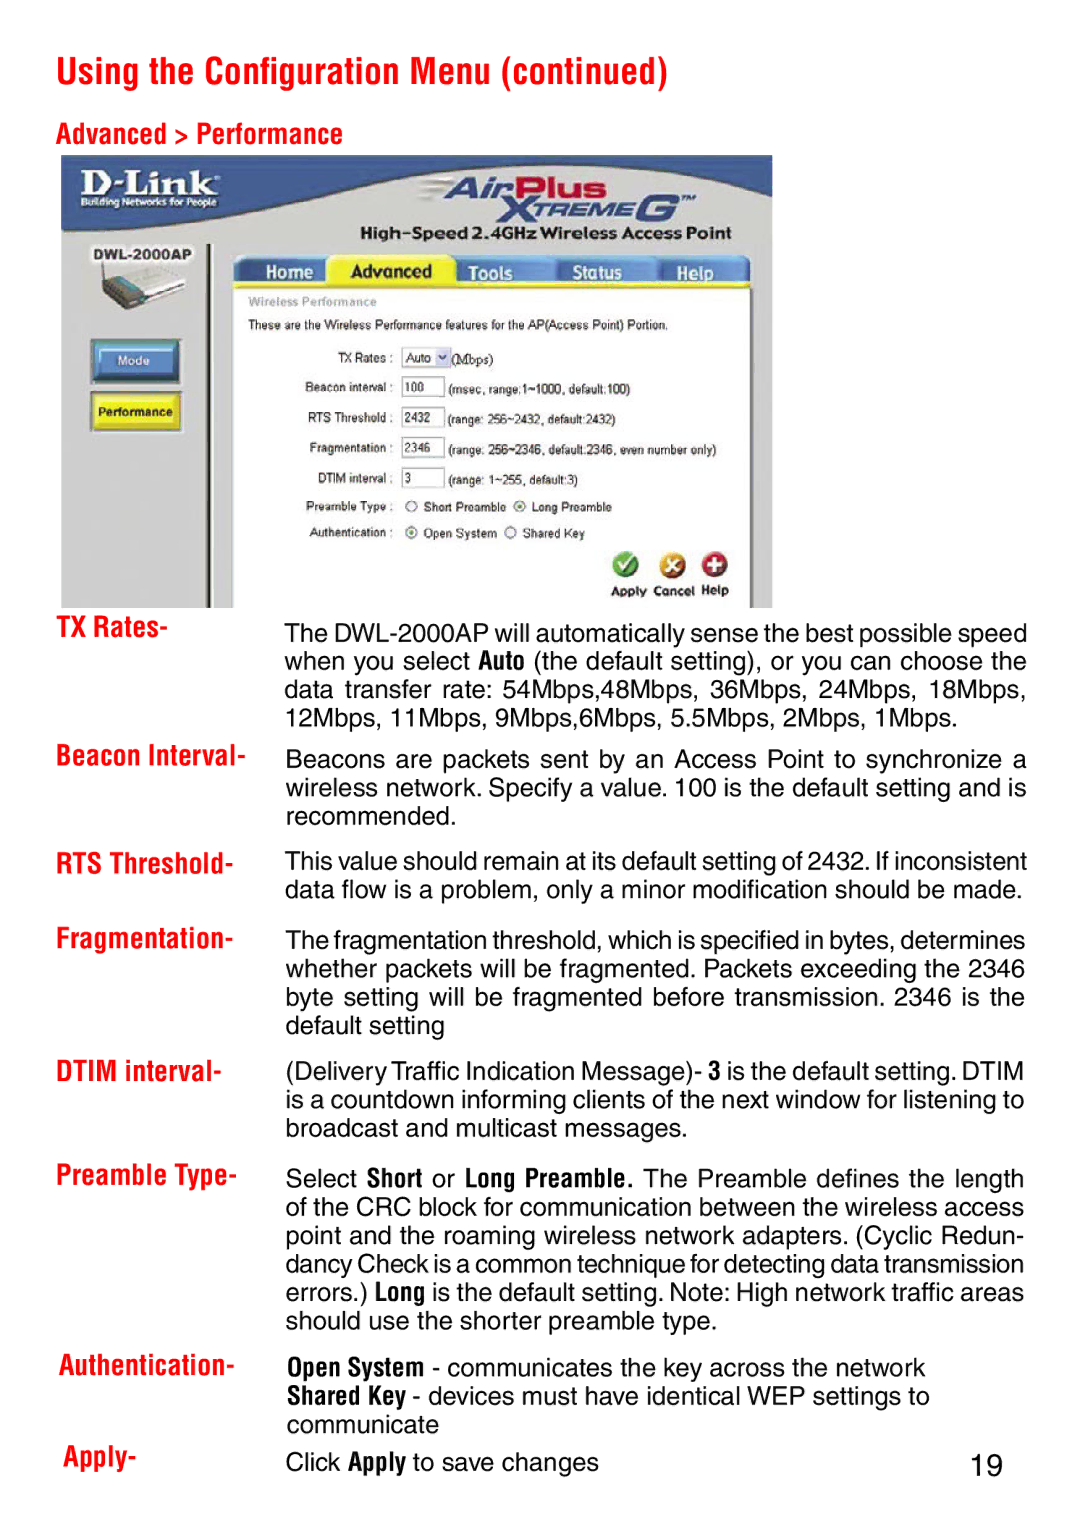 D-Link DWL-2000AP manual Using the Conﬁguration Menu 